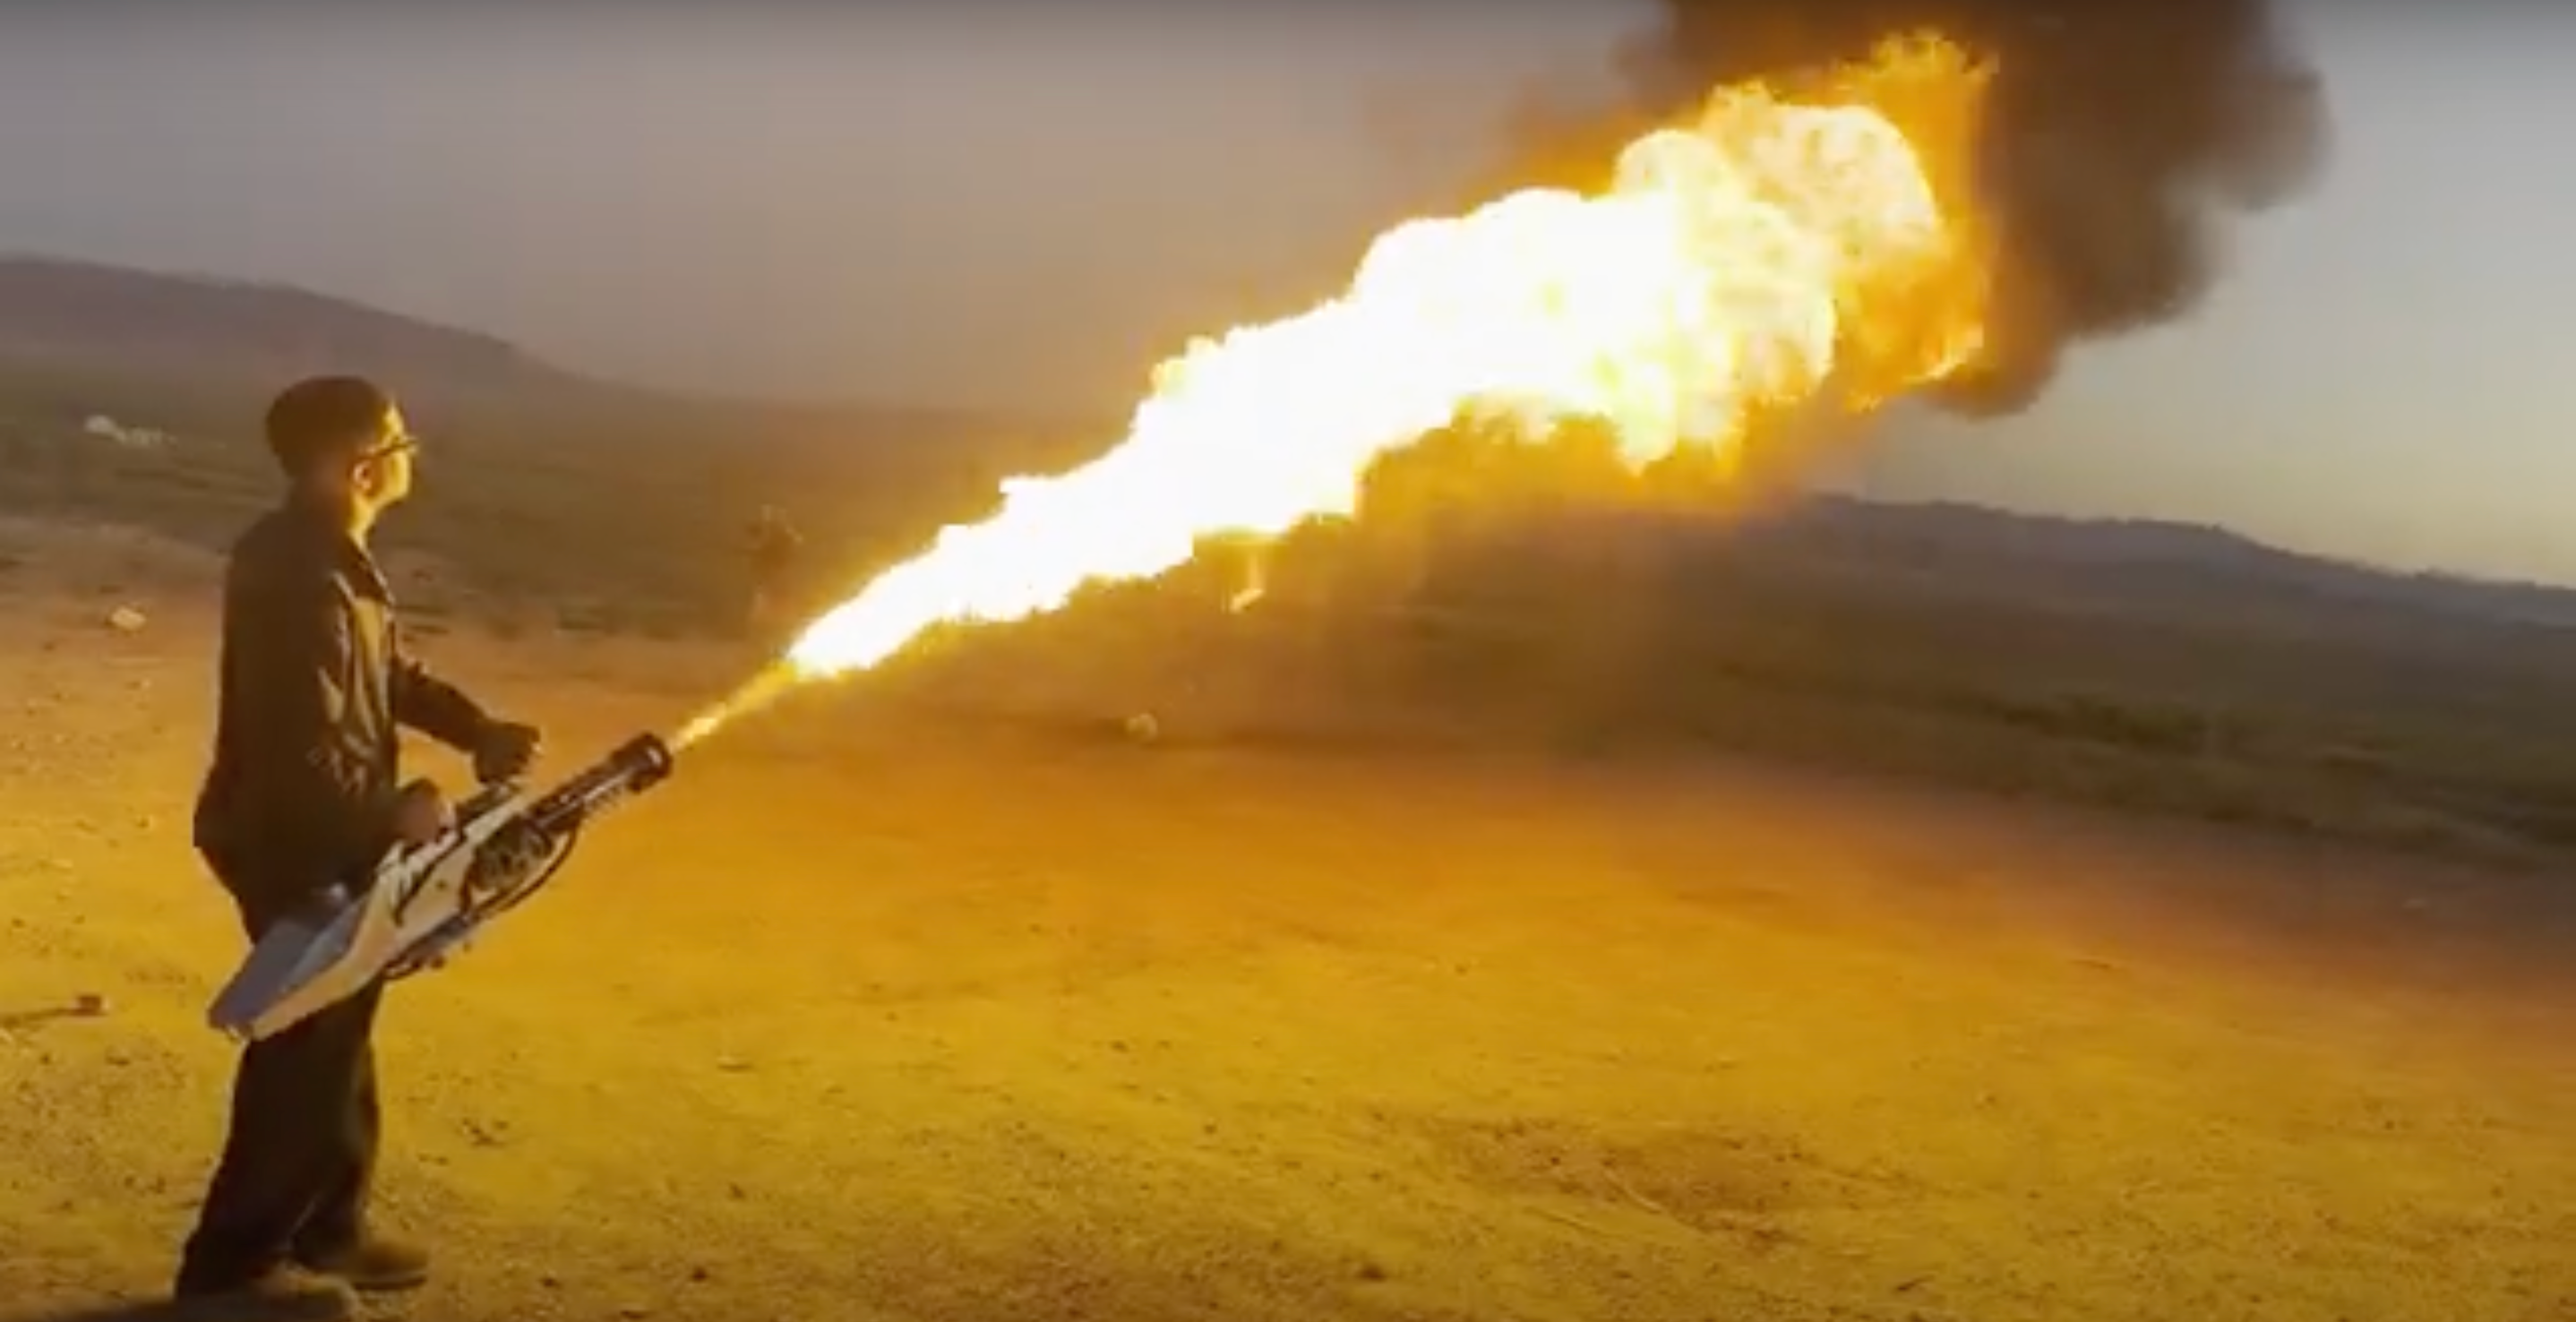 Load video: Big Boy Flamethrower Showcase